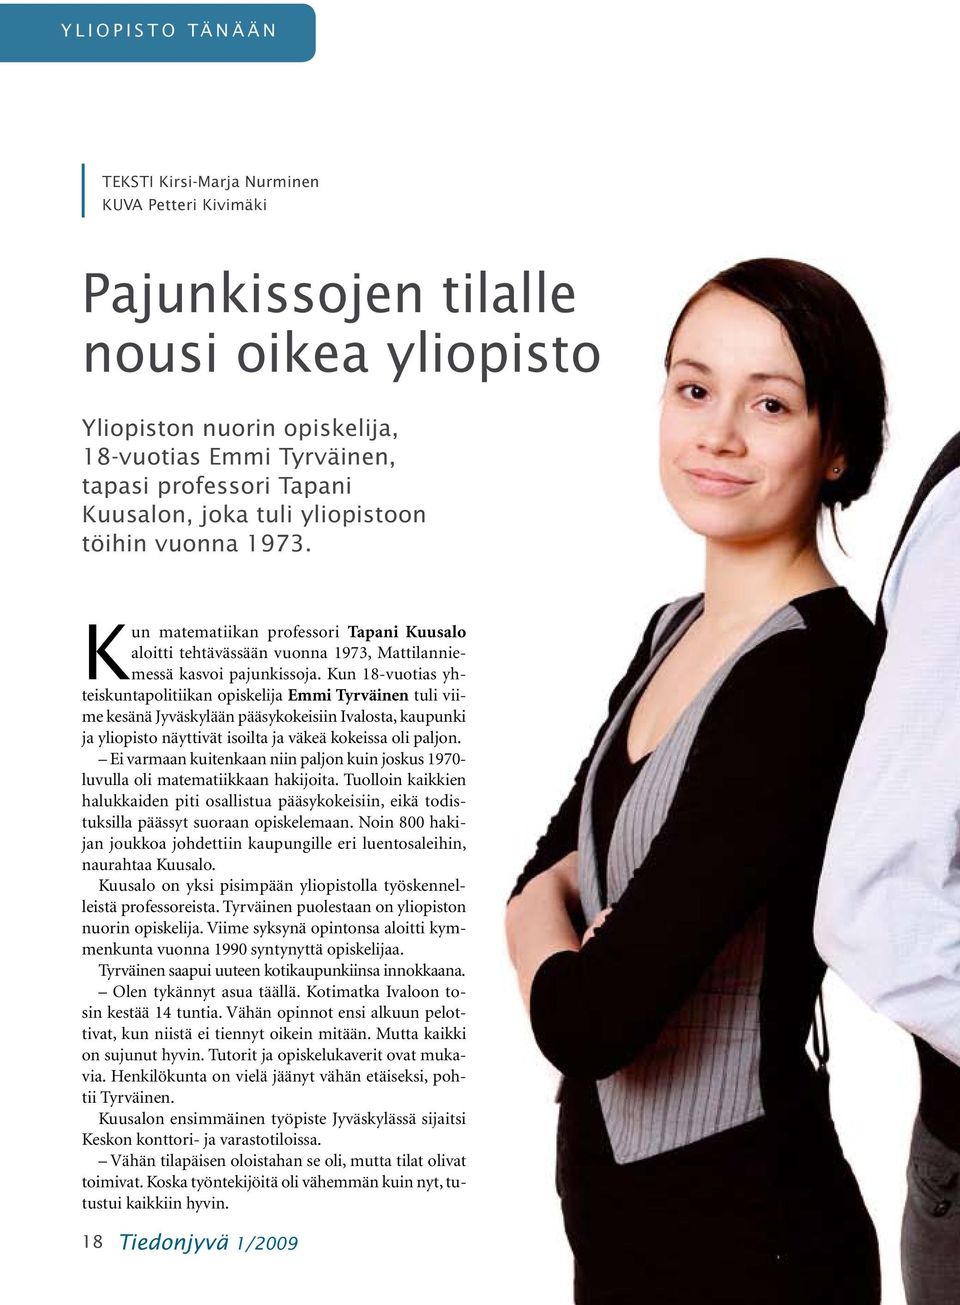 Kun 18-vuotias yhteiskuntapolitiikan opiskelija Emmi Tyrväinen tuli viime kesänä Jyväskylään pääsykokeisiin Ivalosta, kaupunki ja yliopisto näyttivät isoilta ja väkeä kokeissa oli paljon.